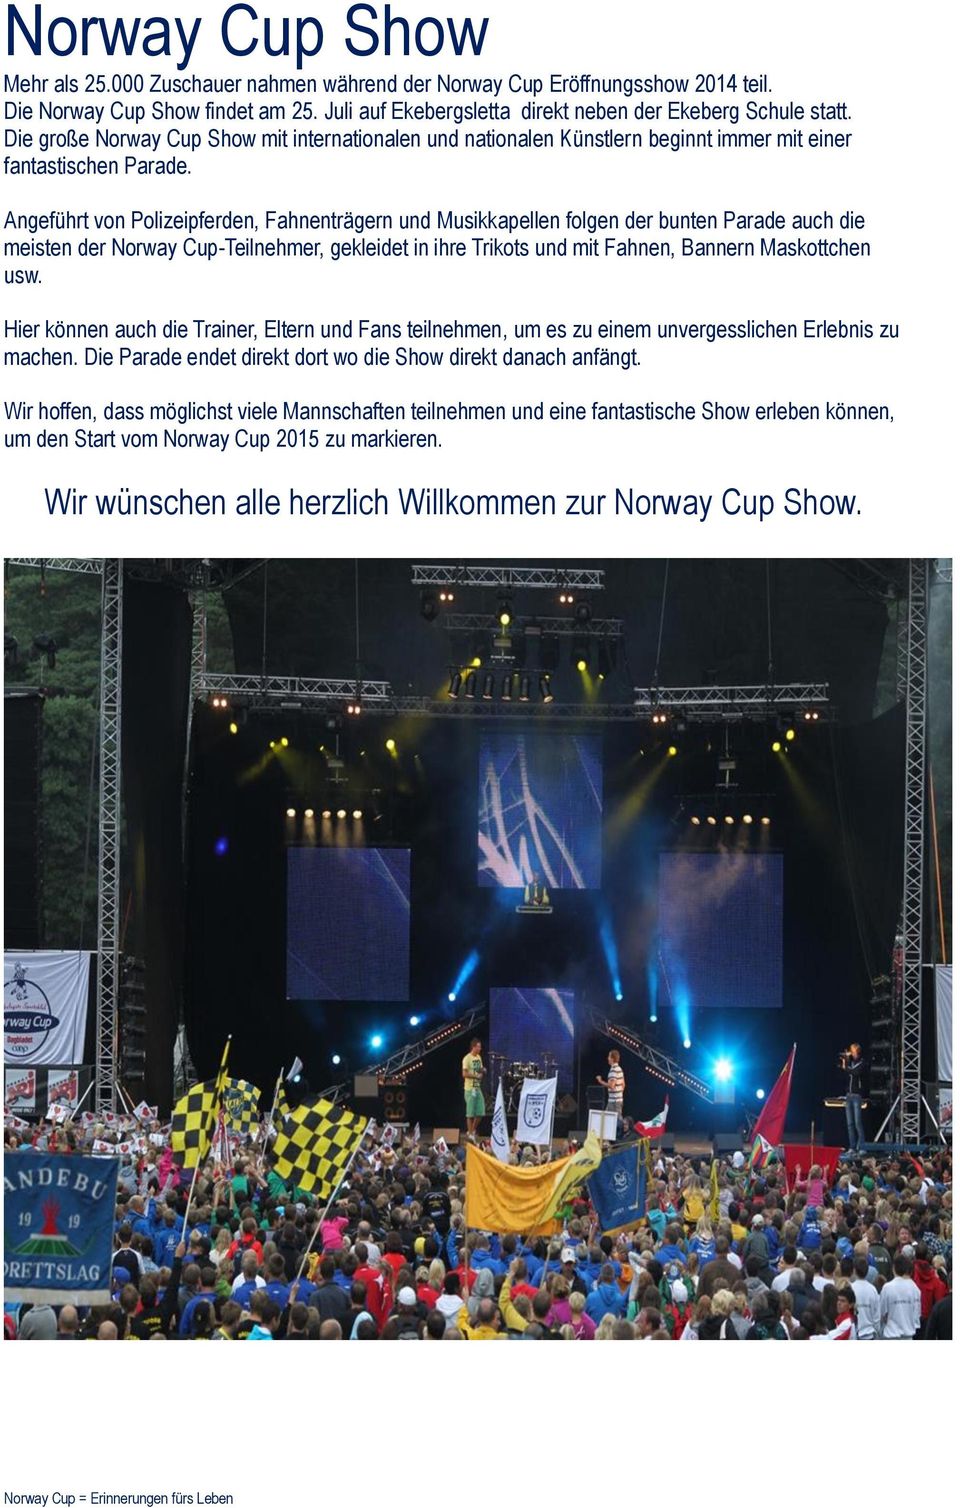 Angeführt von Polizeipferden, Fahnenträgern und Musikkapellen folgen der bunten Parade auch die meisten der Norway Cup-Teilnehmer, gekleidet in ihre Trikots und mit Fahnen, Bannern Maskottchen usw.